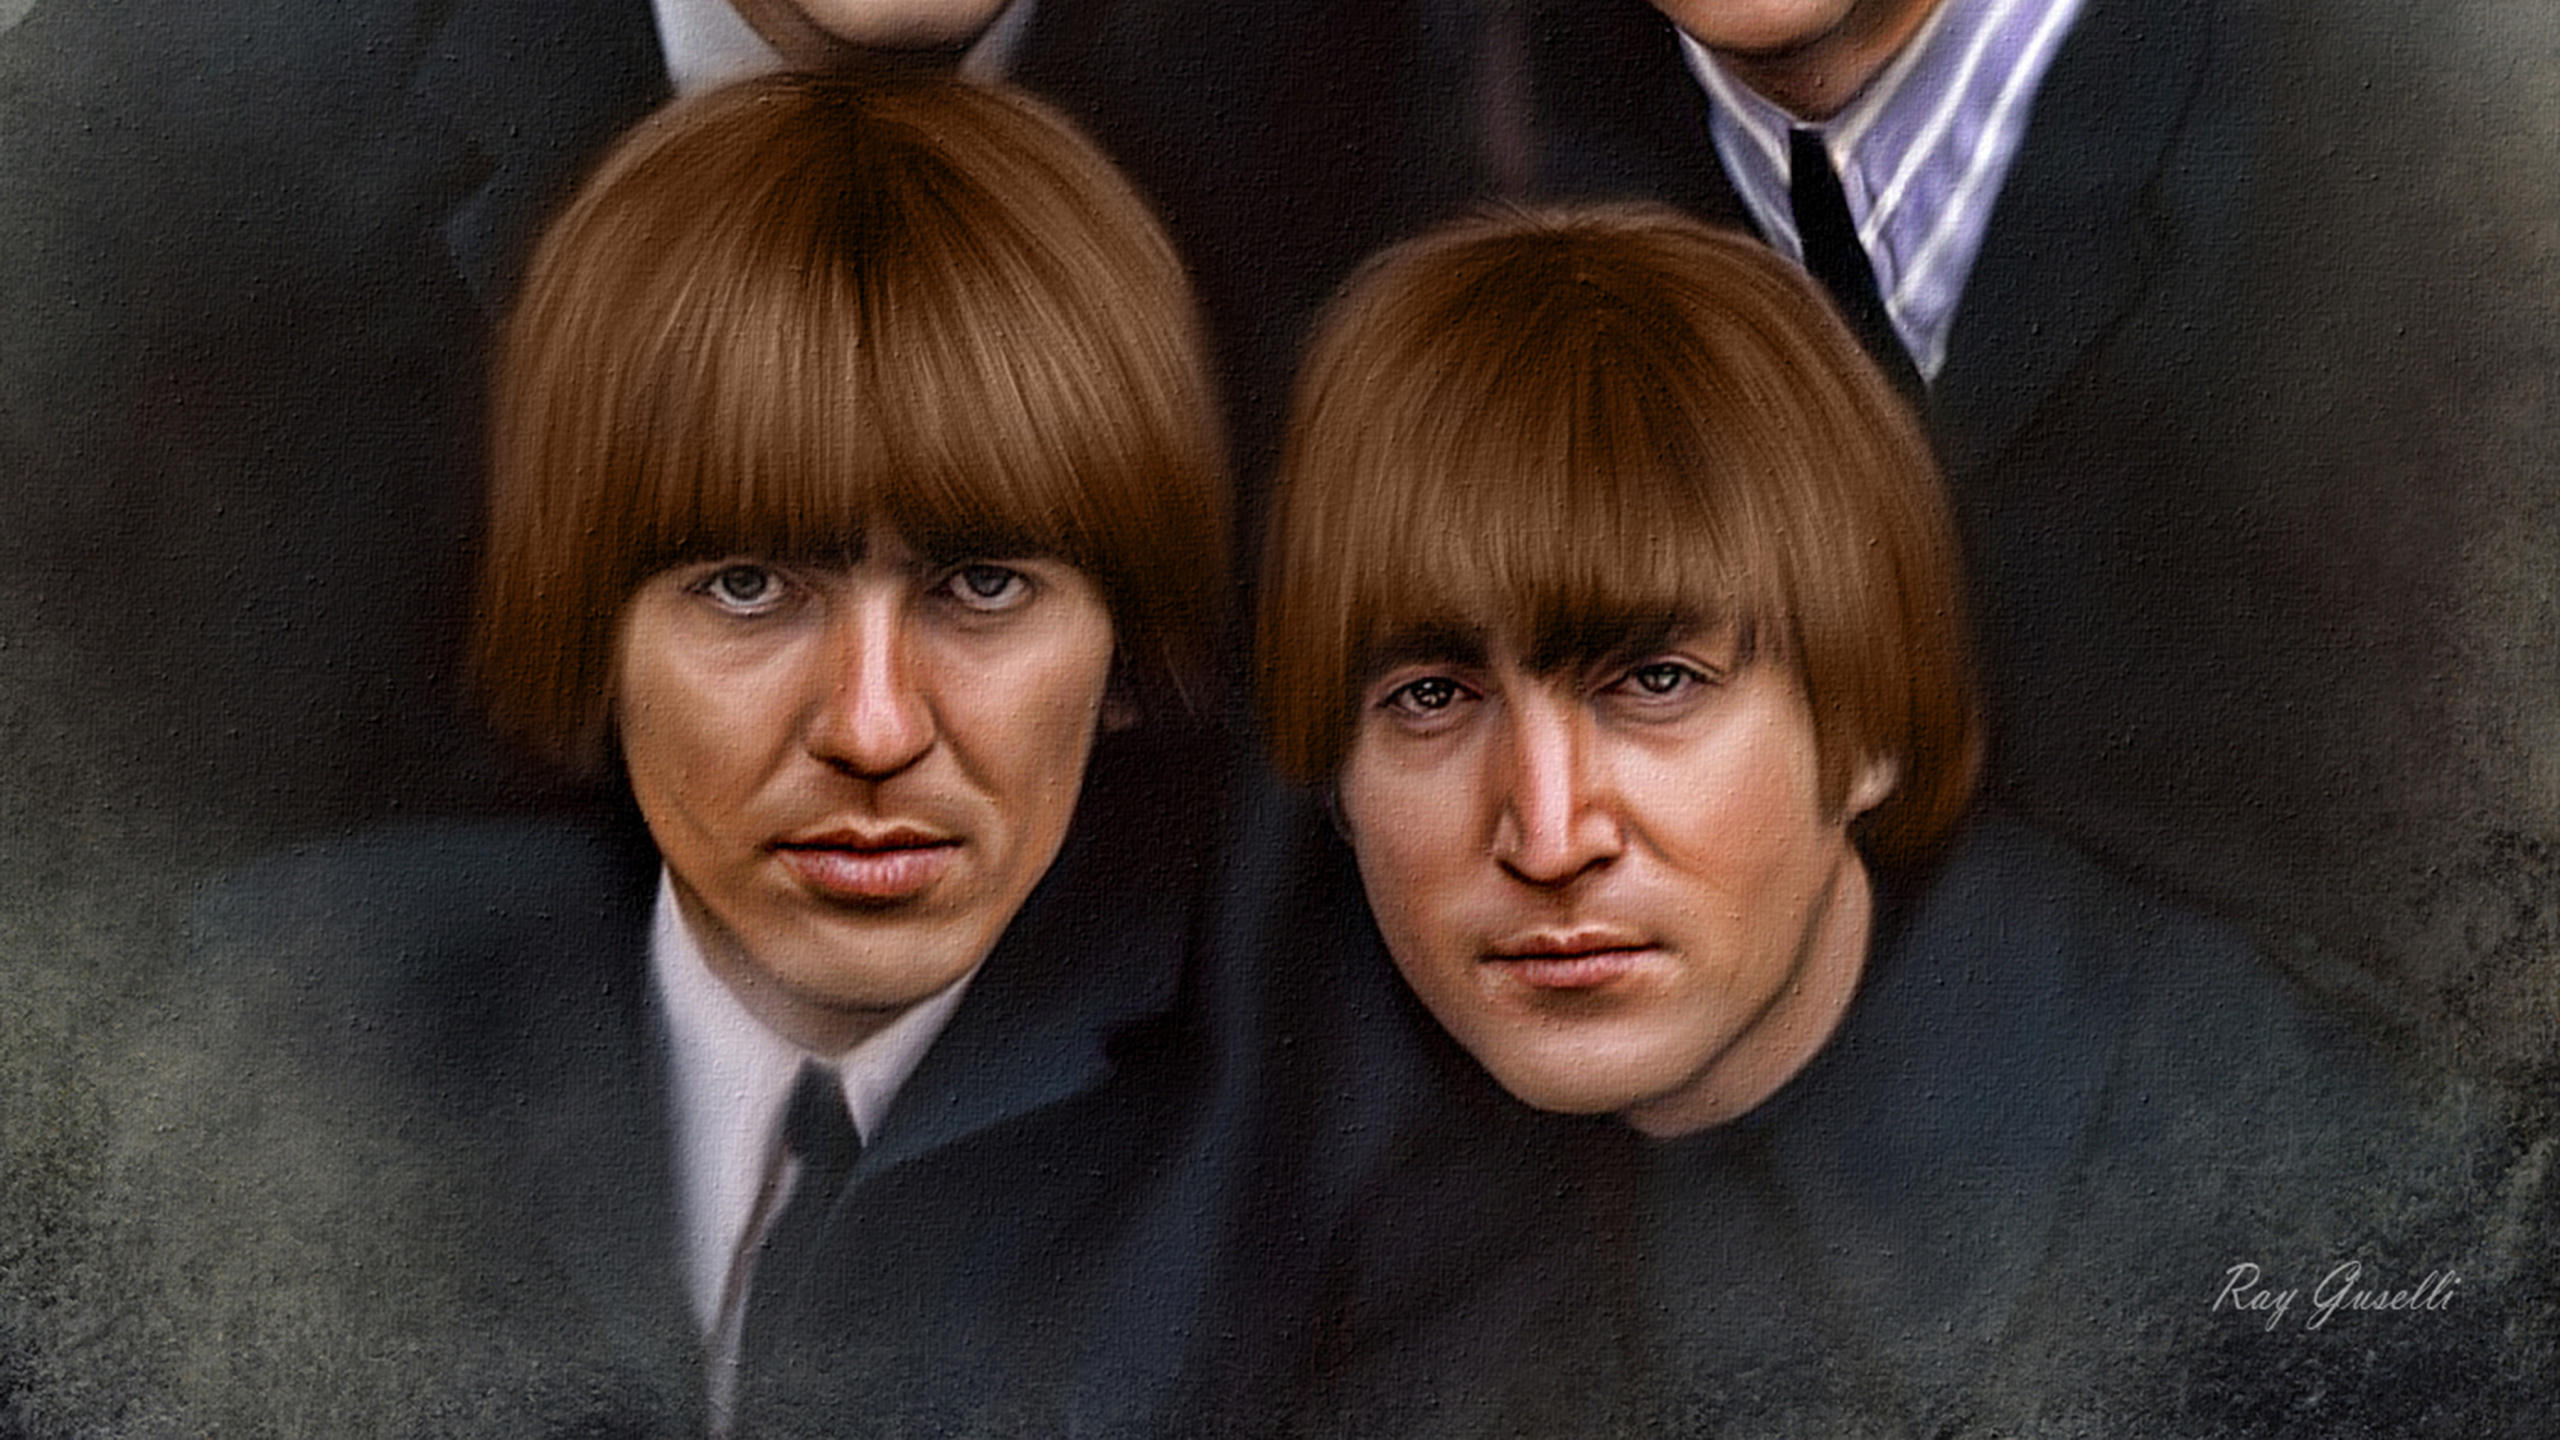 约翰*列侬, 保罗*麦卡特尼, 乔治*哈里森, Ringo Starr, 披头士 8x10 壁纸 2560x1440 允许